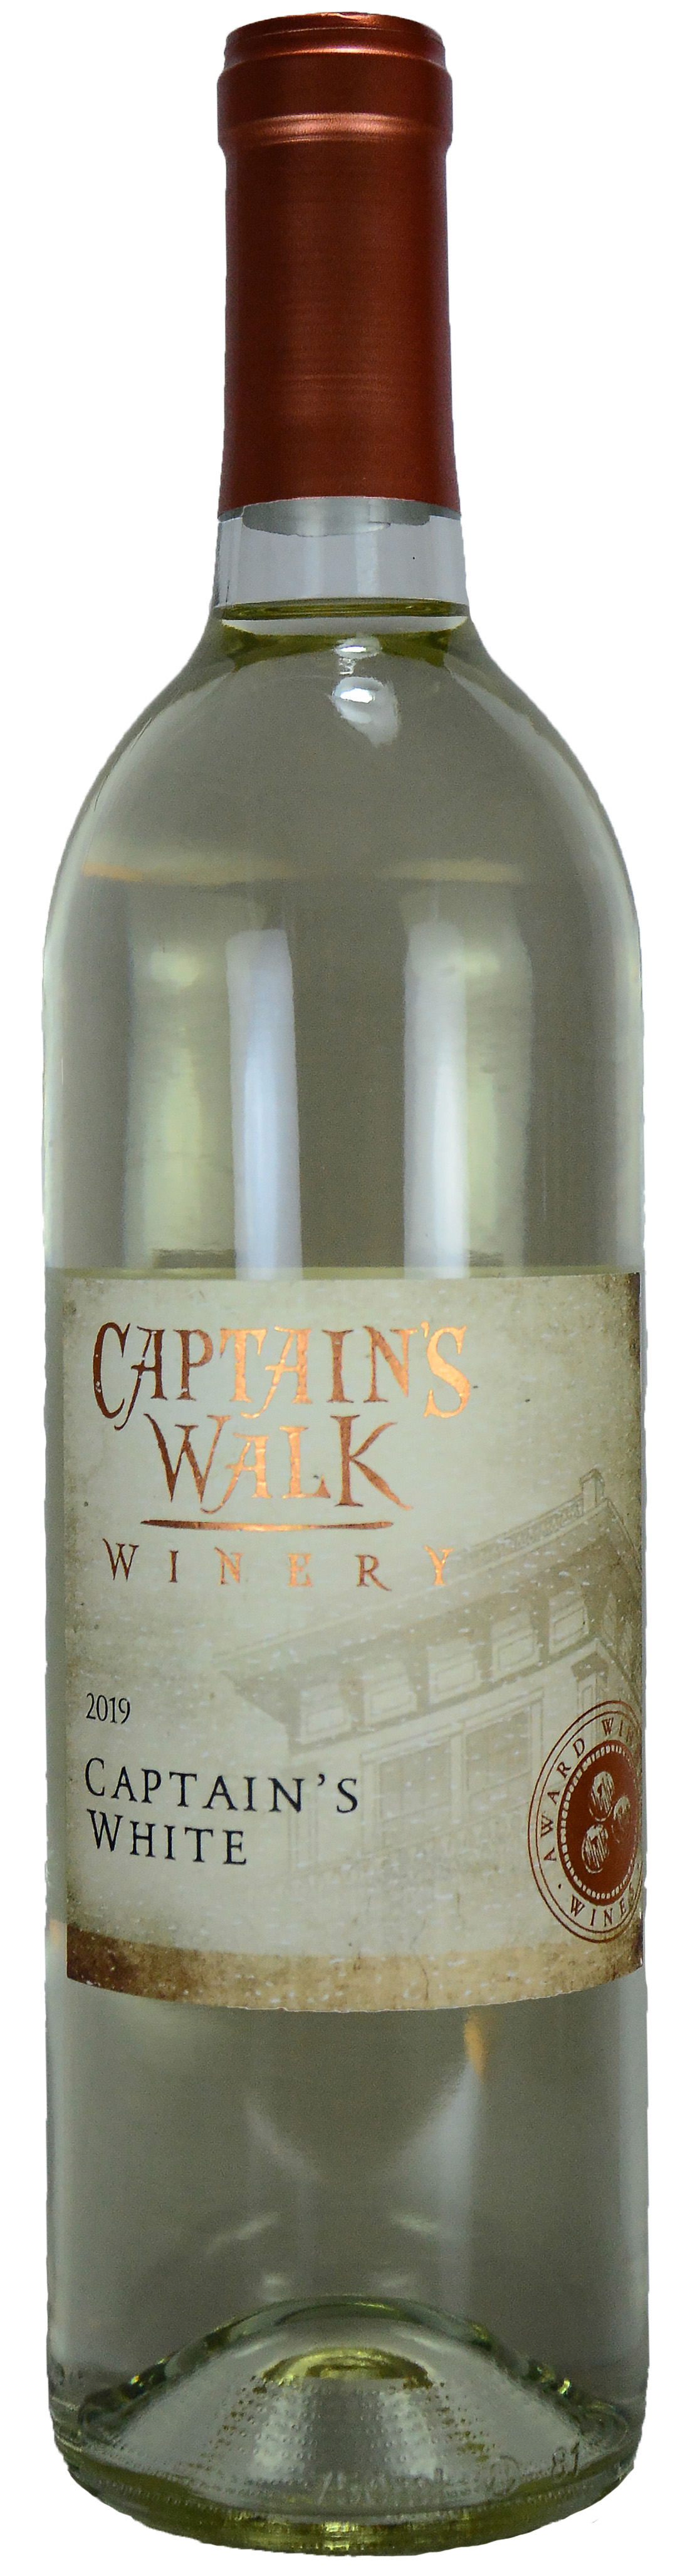 Captain's Walk Captain's White Product Photo